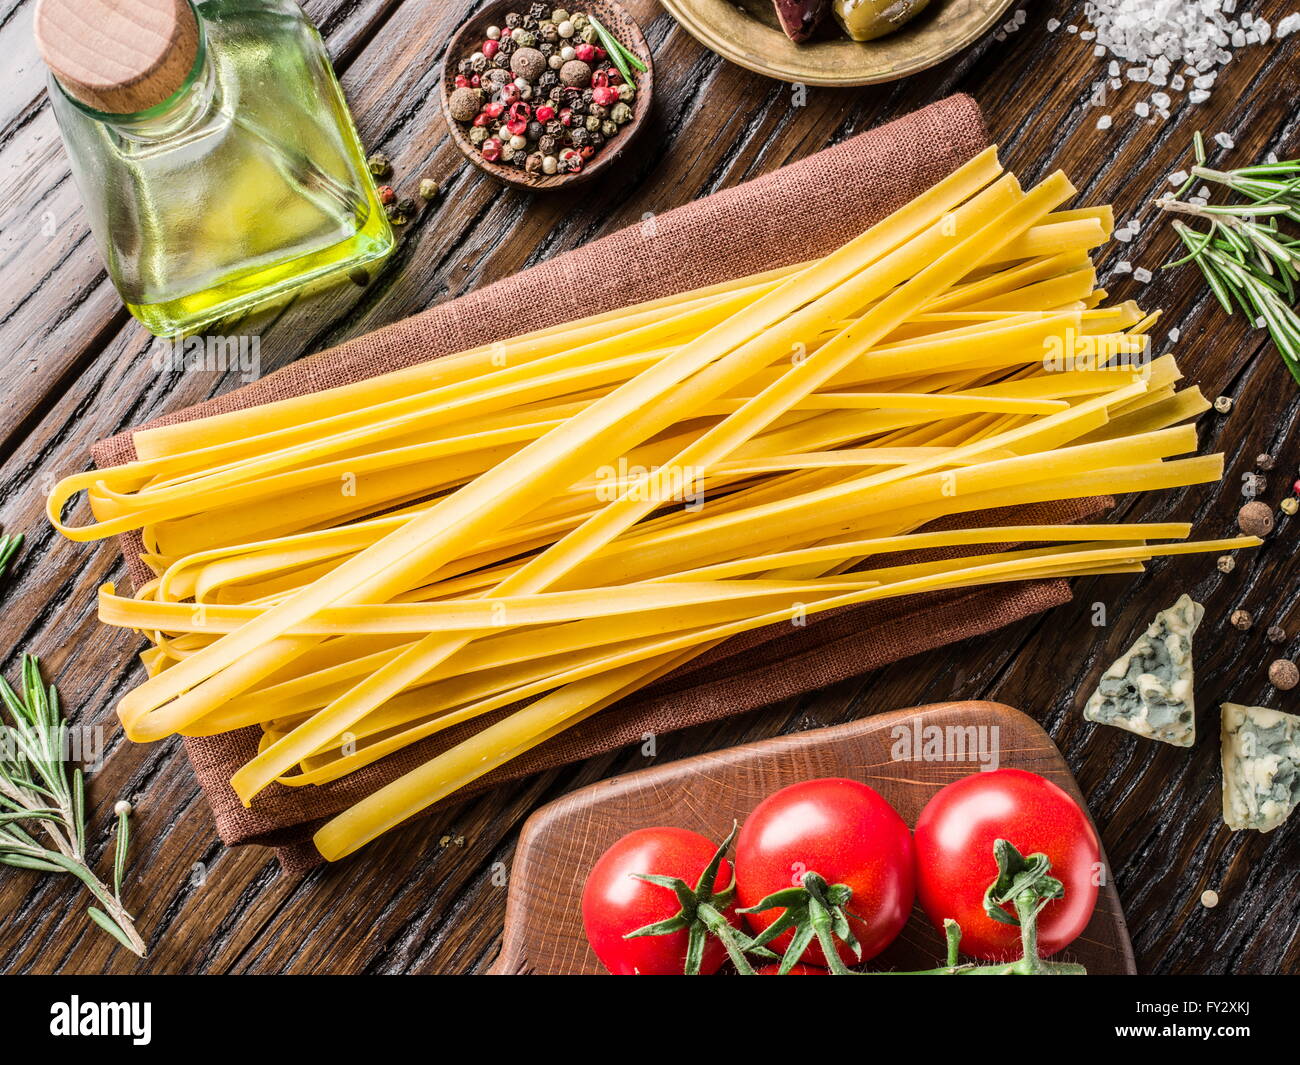 Ingrédients pâtes. Les tomates cerise, les pâtes spaghetti, de romarin et d'épices sur la table en bois. Banque D'Images